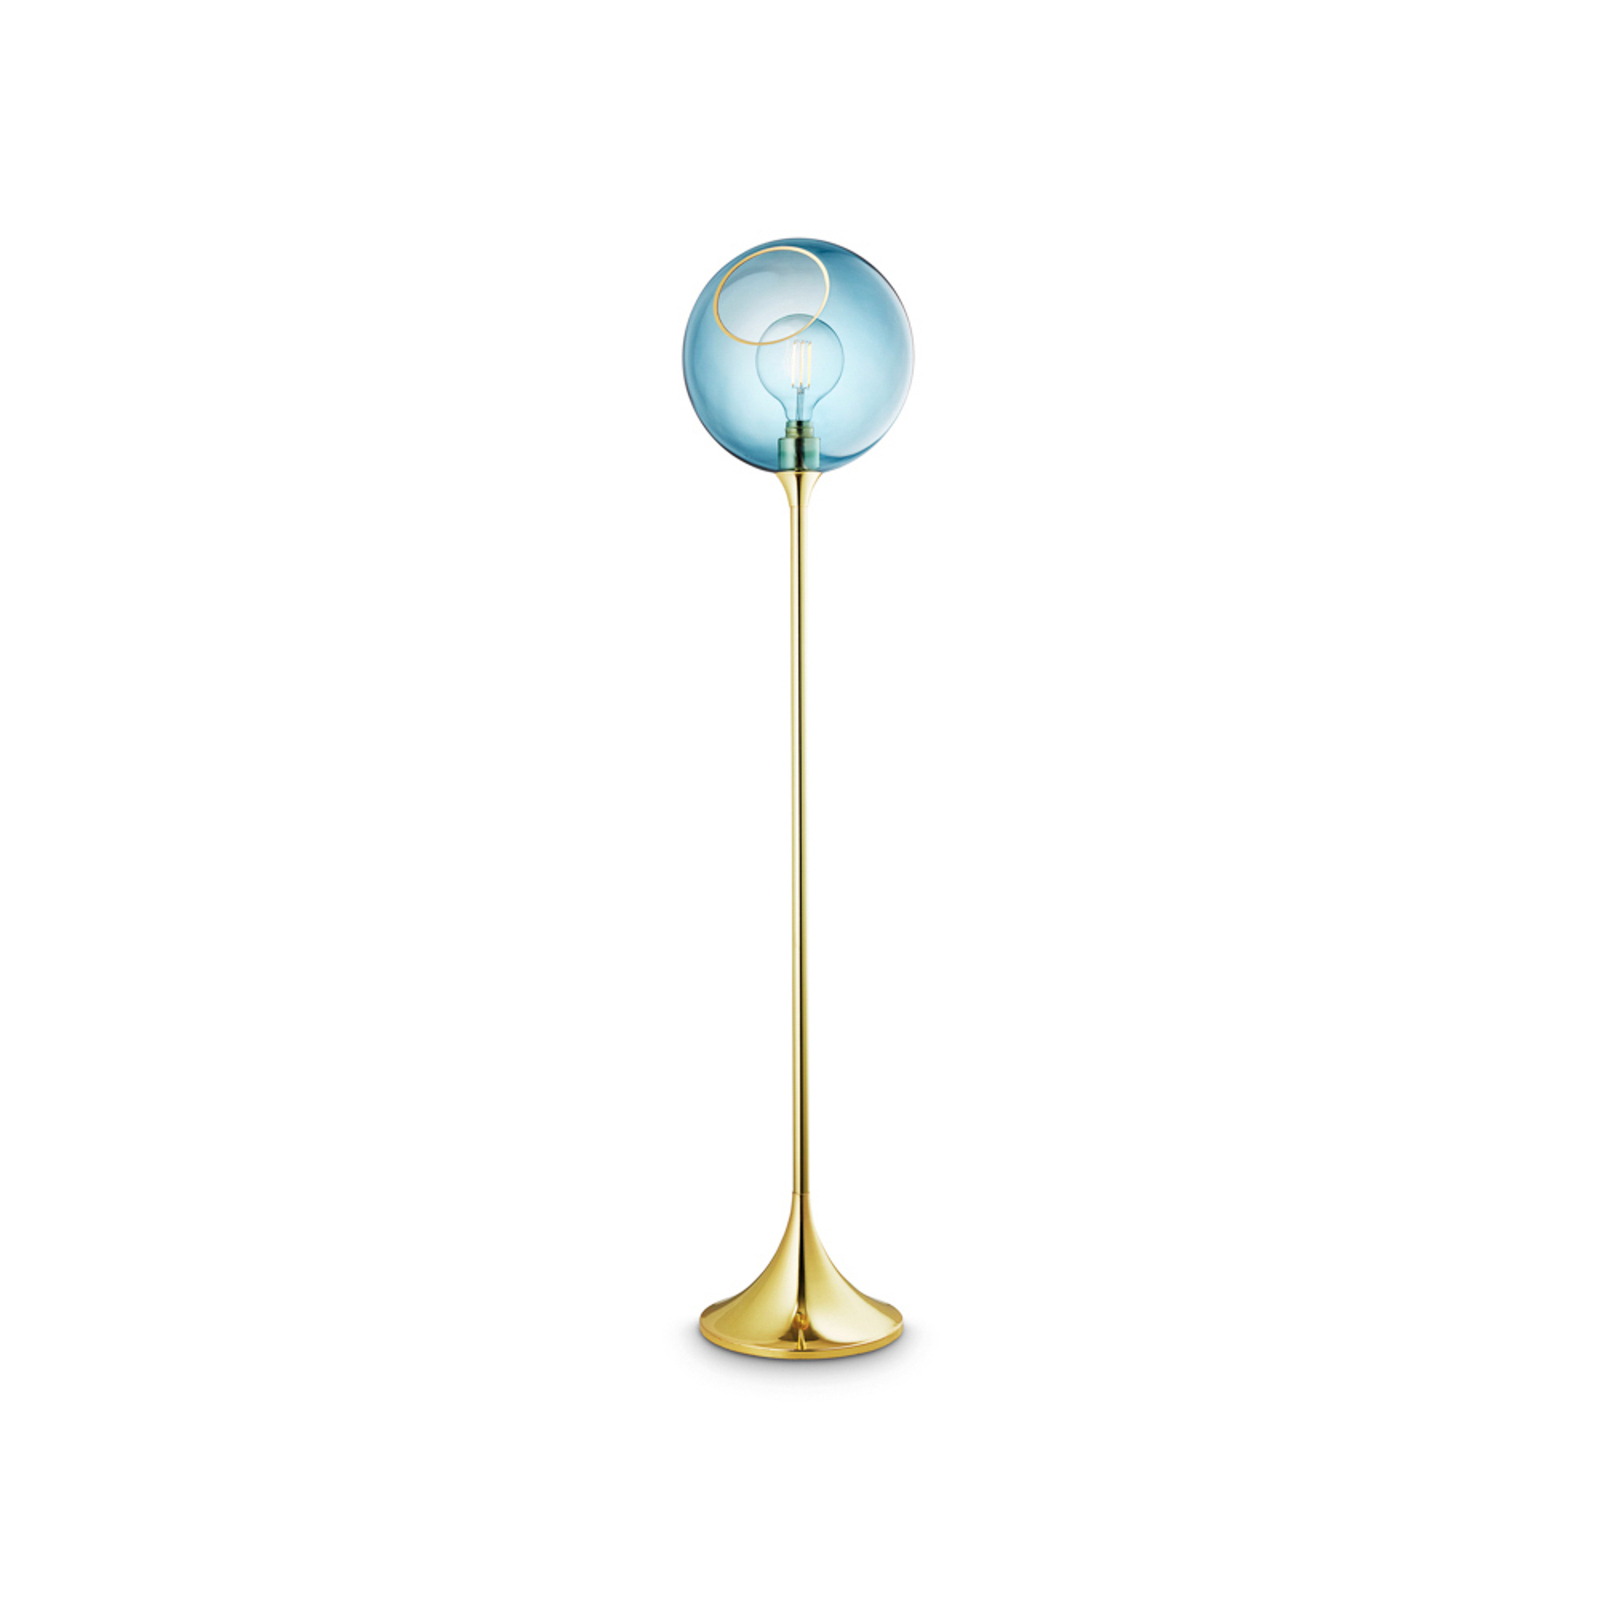 Ballroom floor lamp, blue, glass, hand-blown, dimmable